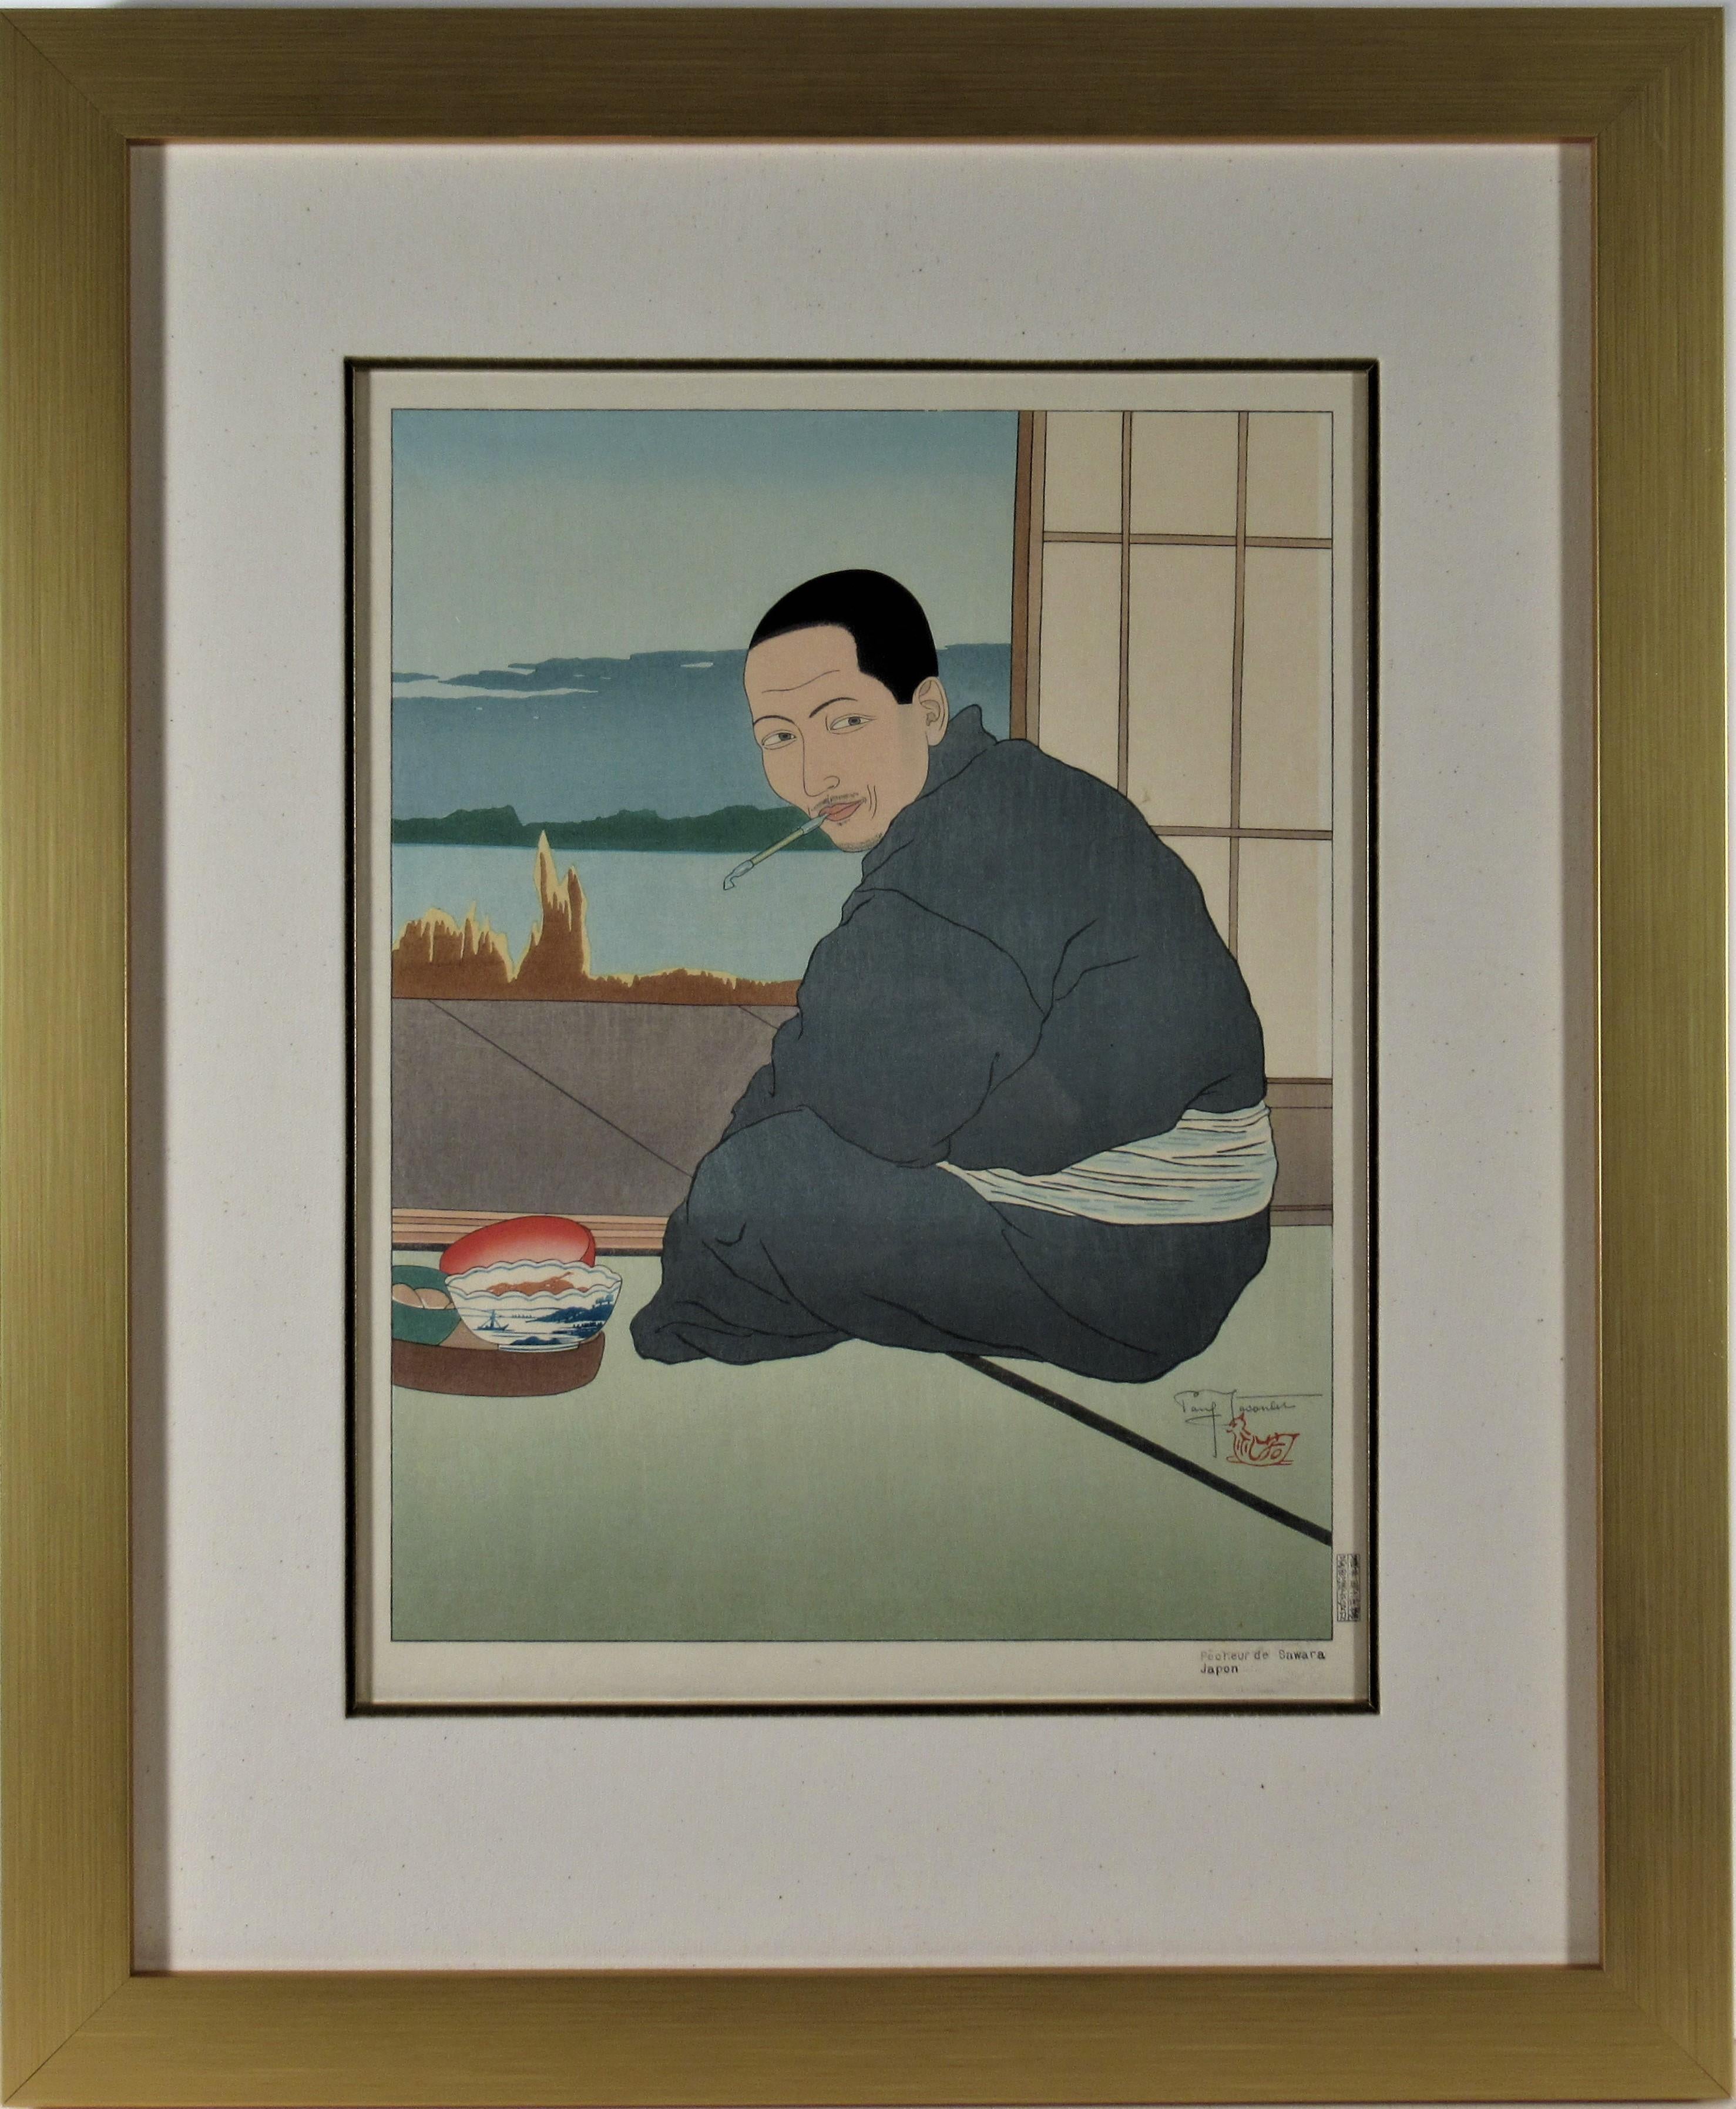 Paul Jacoulet Figurative Print – Pecheur de Sawara, Japan (Fisherman of Sawara, Japan)